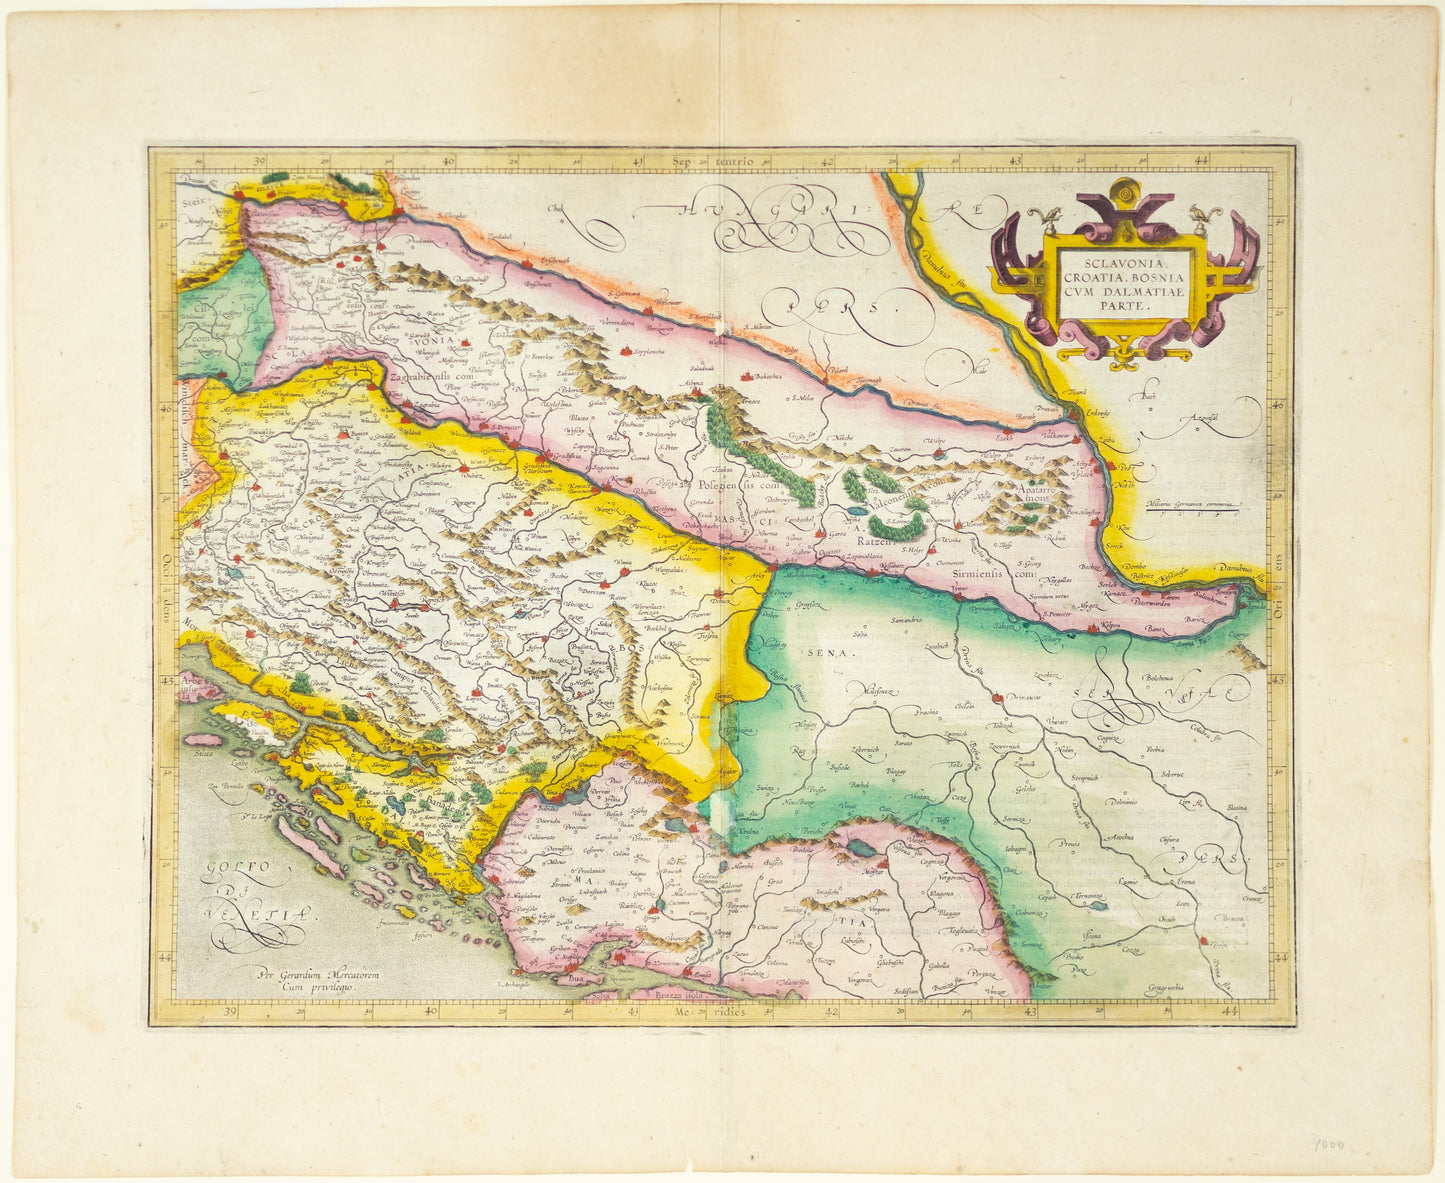 Hondius, Jodocus. Sclavonia, Croatia, Bosnia, cum Dalmatiae Parte. Amsterdam: ca. 1640. [Map of Slovenia, Croatia, Bosnia]